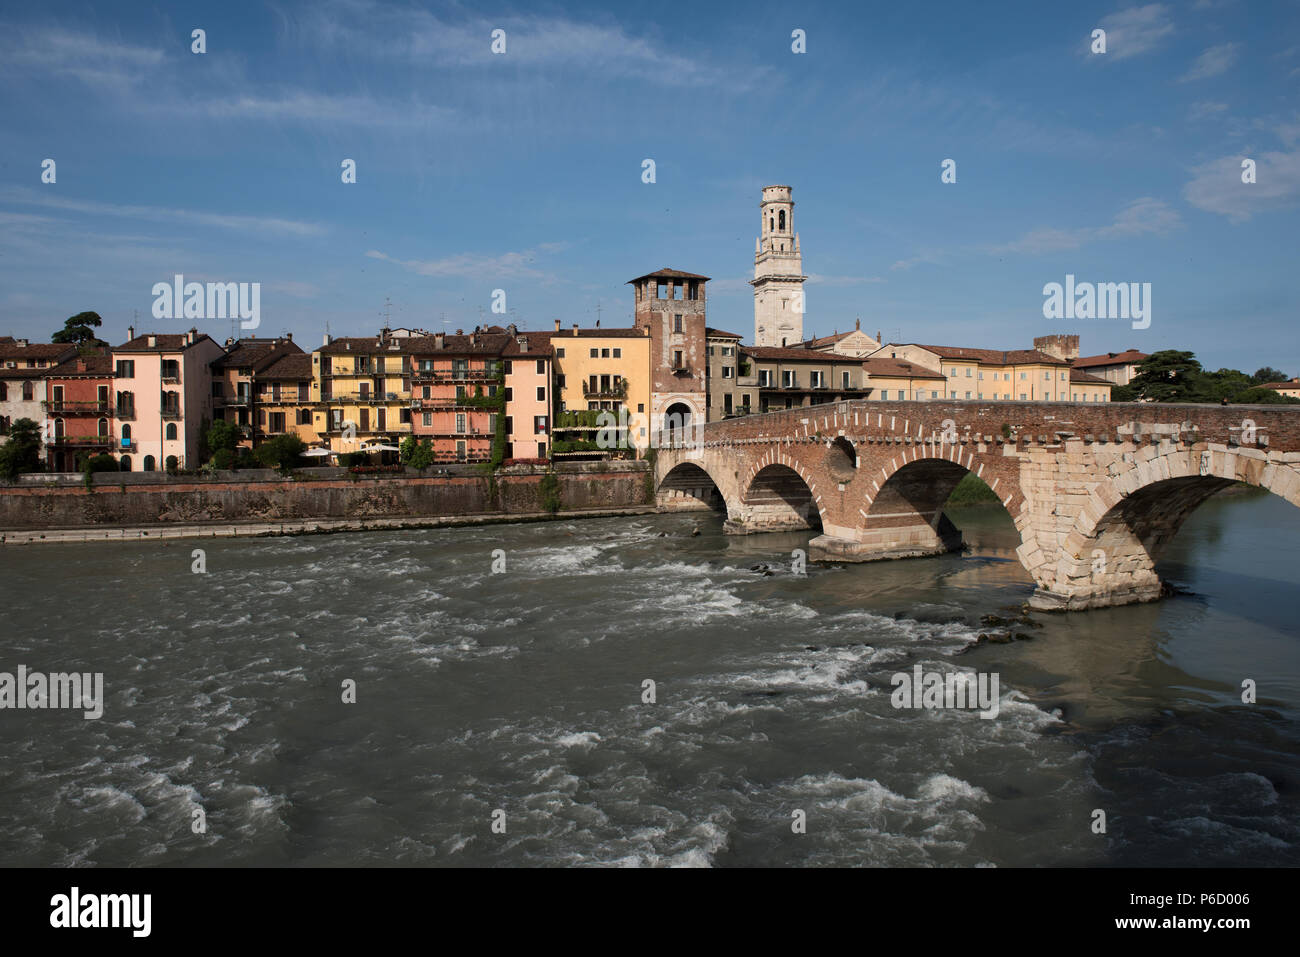 Il Ponte Pietra (Italiano per 'Stone ponte"), una volta noto come Pons Marmoreus, è un arco romano ponte che attraversa il fiume Adige a Verona, Italia. Il Foto Stock